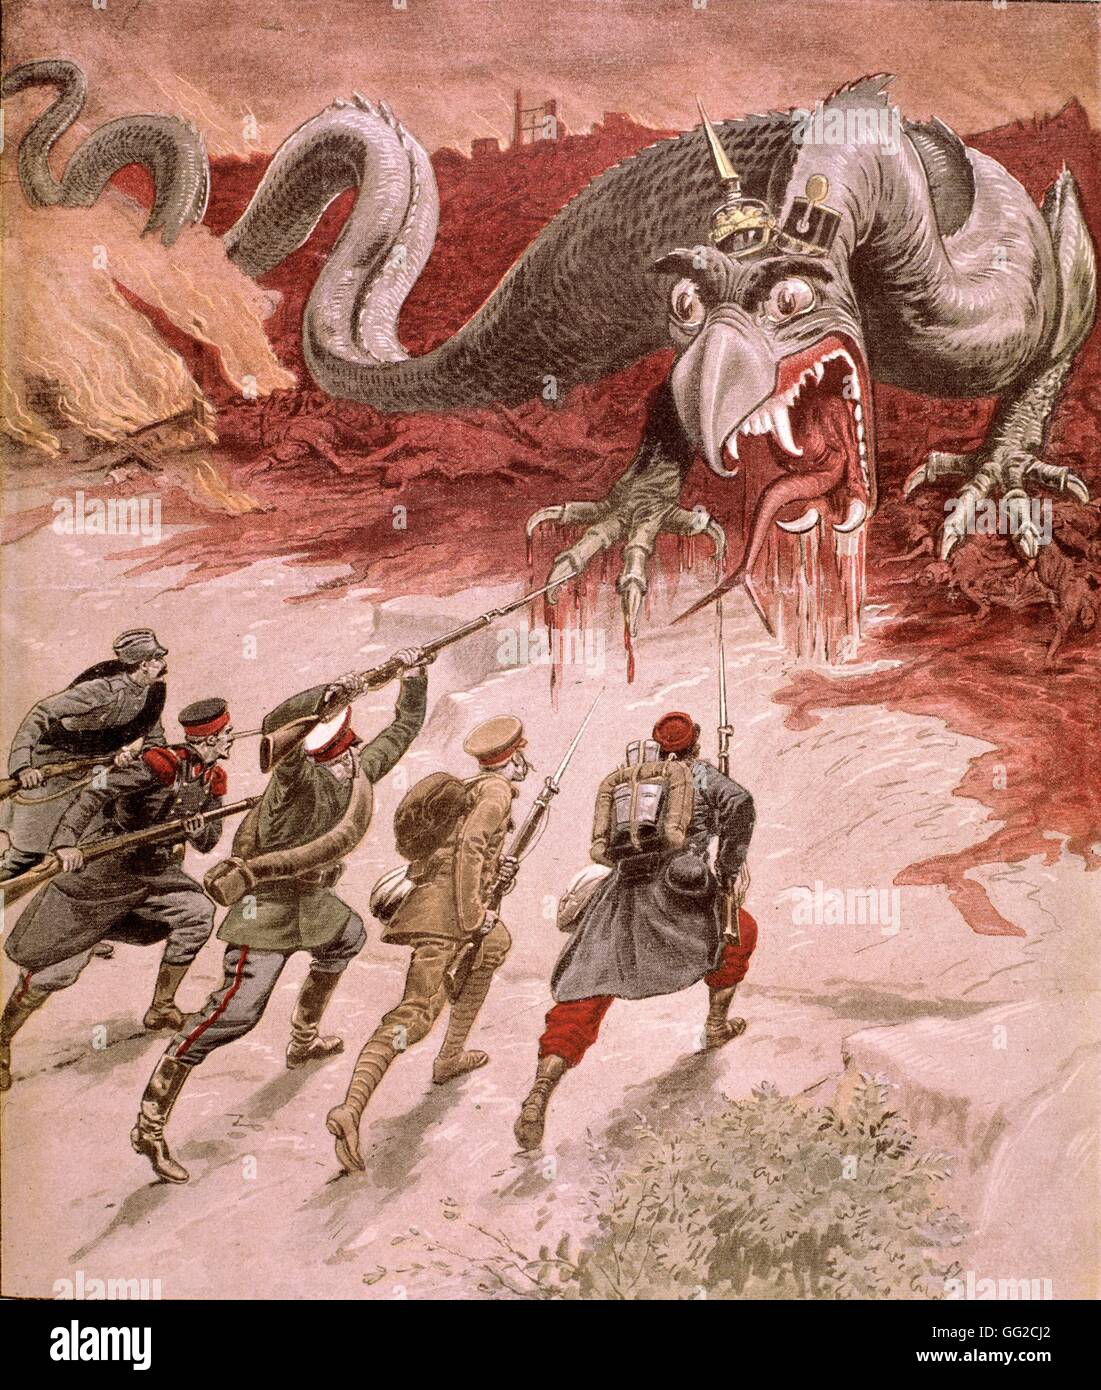 Illustration 'Monster' dans 'Le Petit Journal', 29 septembre 1914 France, la Première Guerre mondiale Banque D'Images